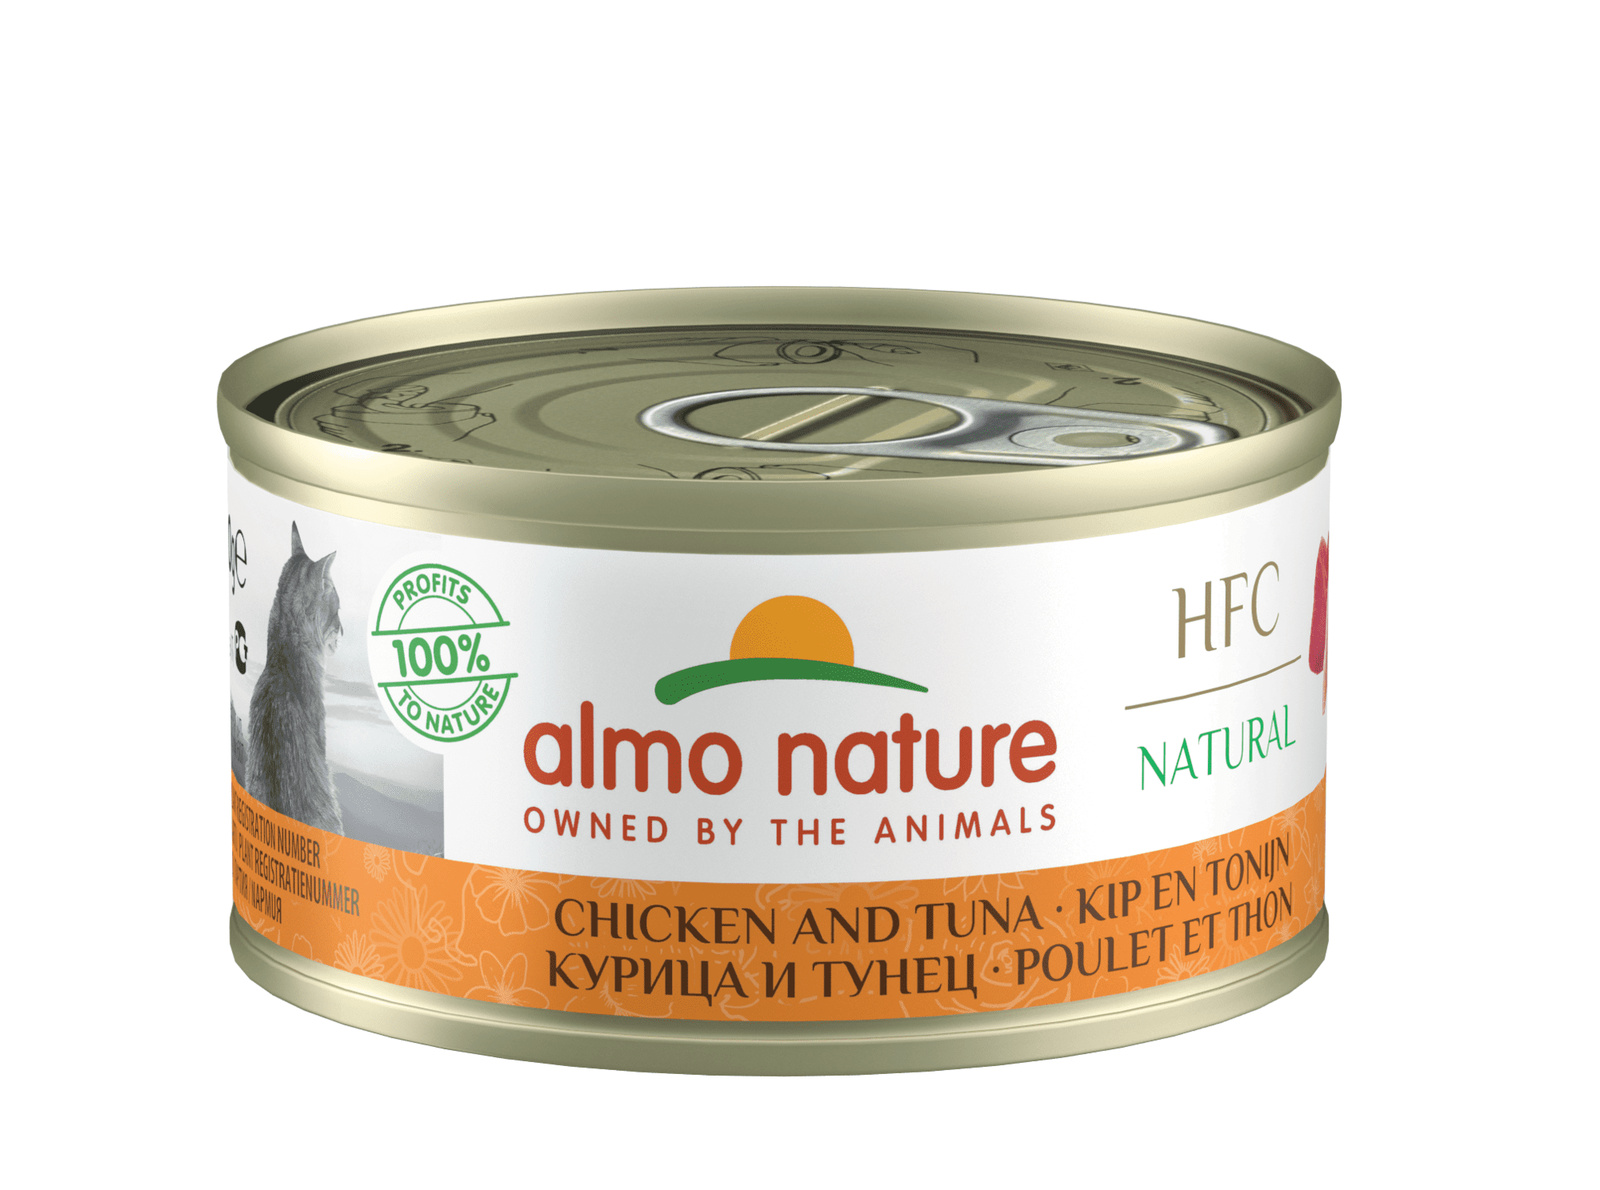 Almo Nature консервы Almo Nature консервы для кошек, с курицей и тунцом, 75% мяса (70 г) консервы для кошек almo nature legend с курицей и сыром 75% 70 г